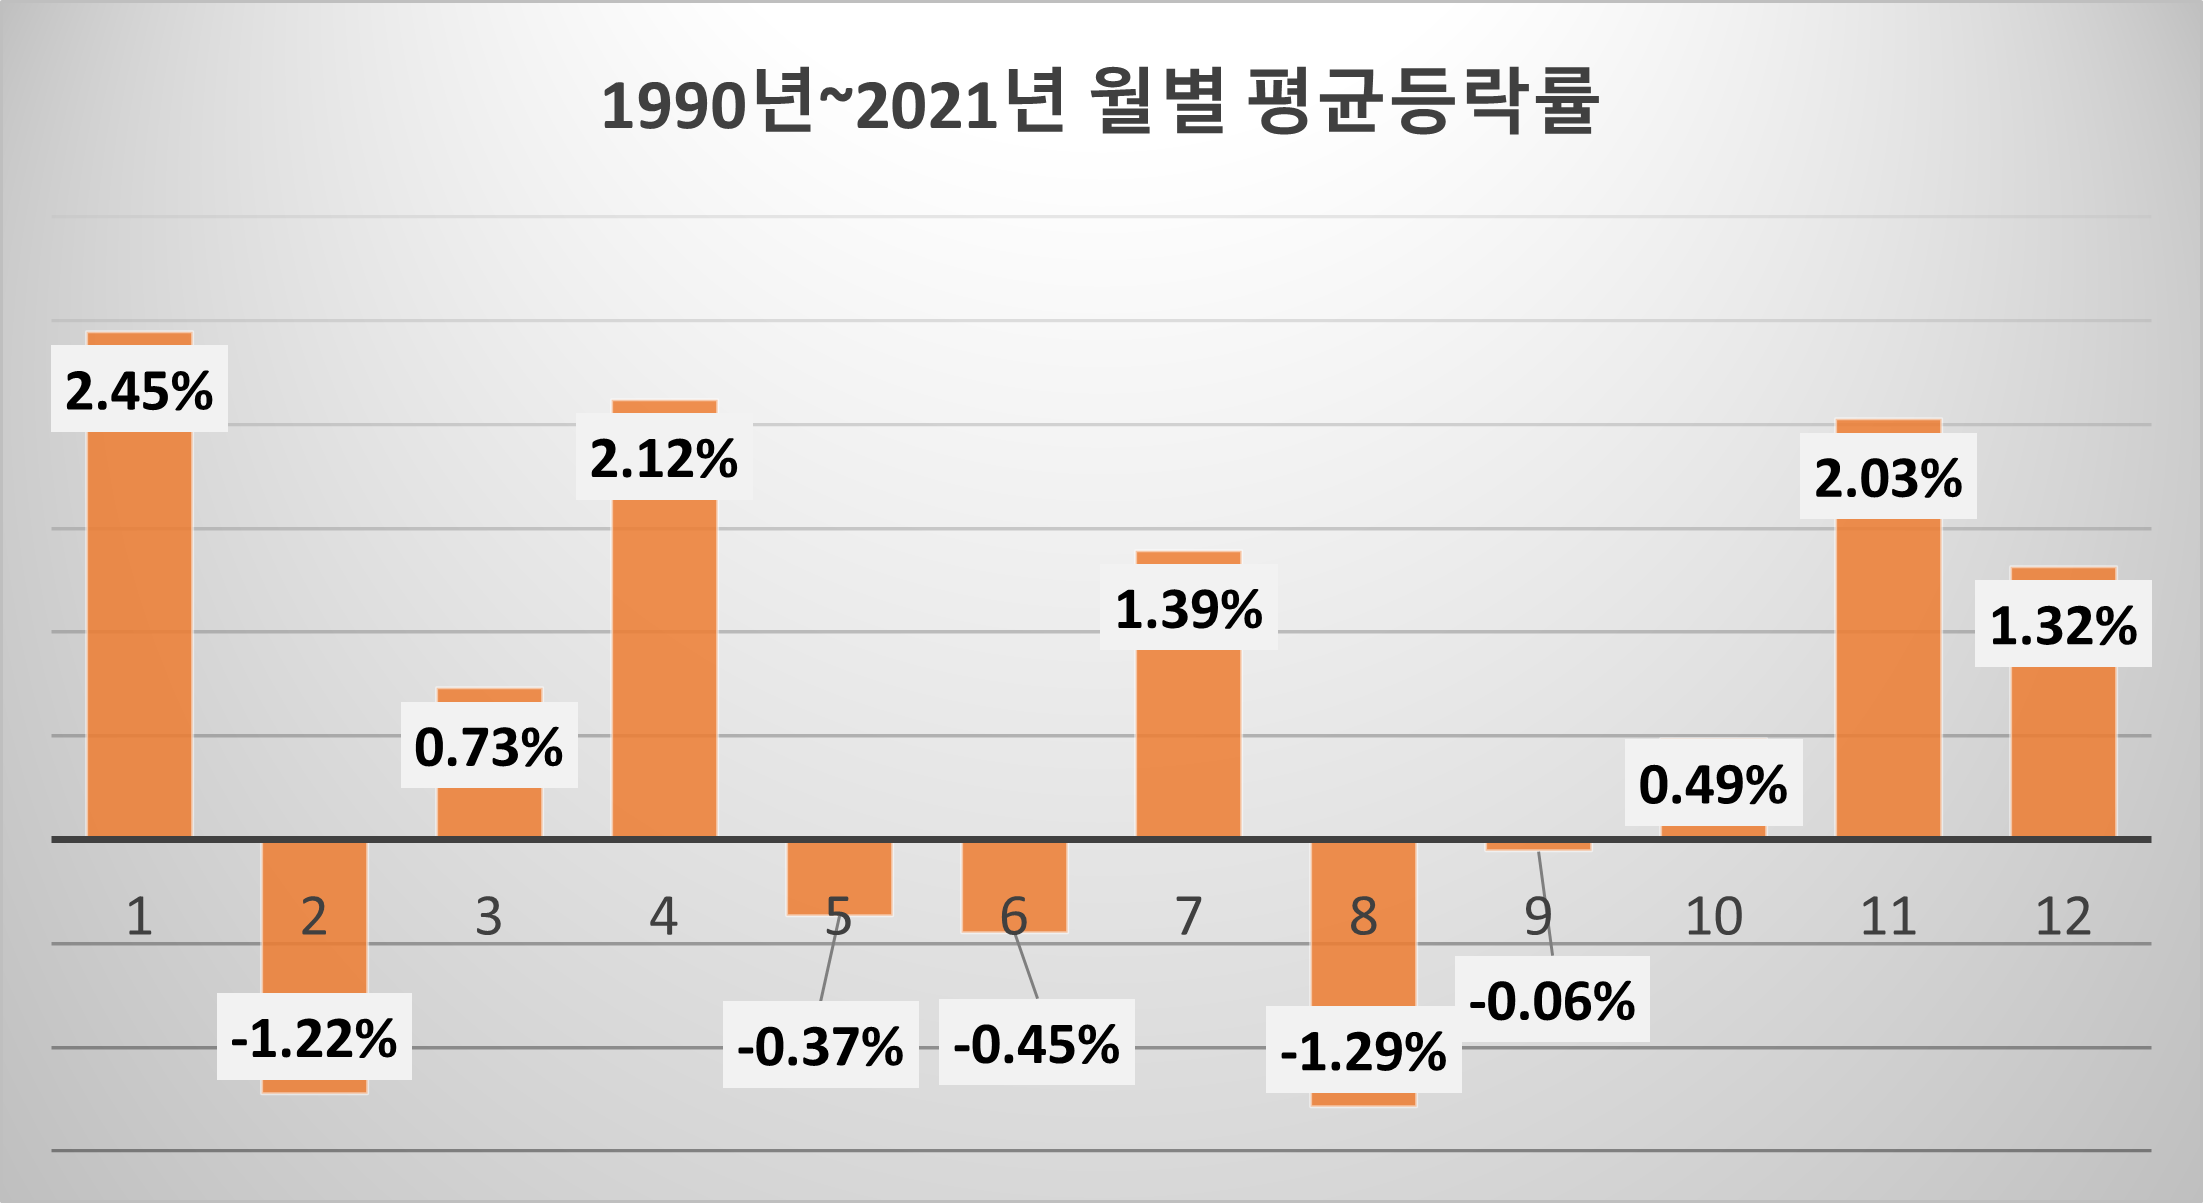 1990년부터 2021년까지 월별 코스피 지수 평균 등락률 